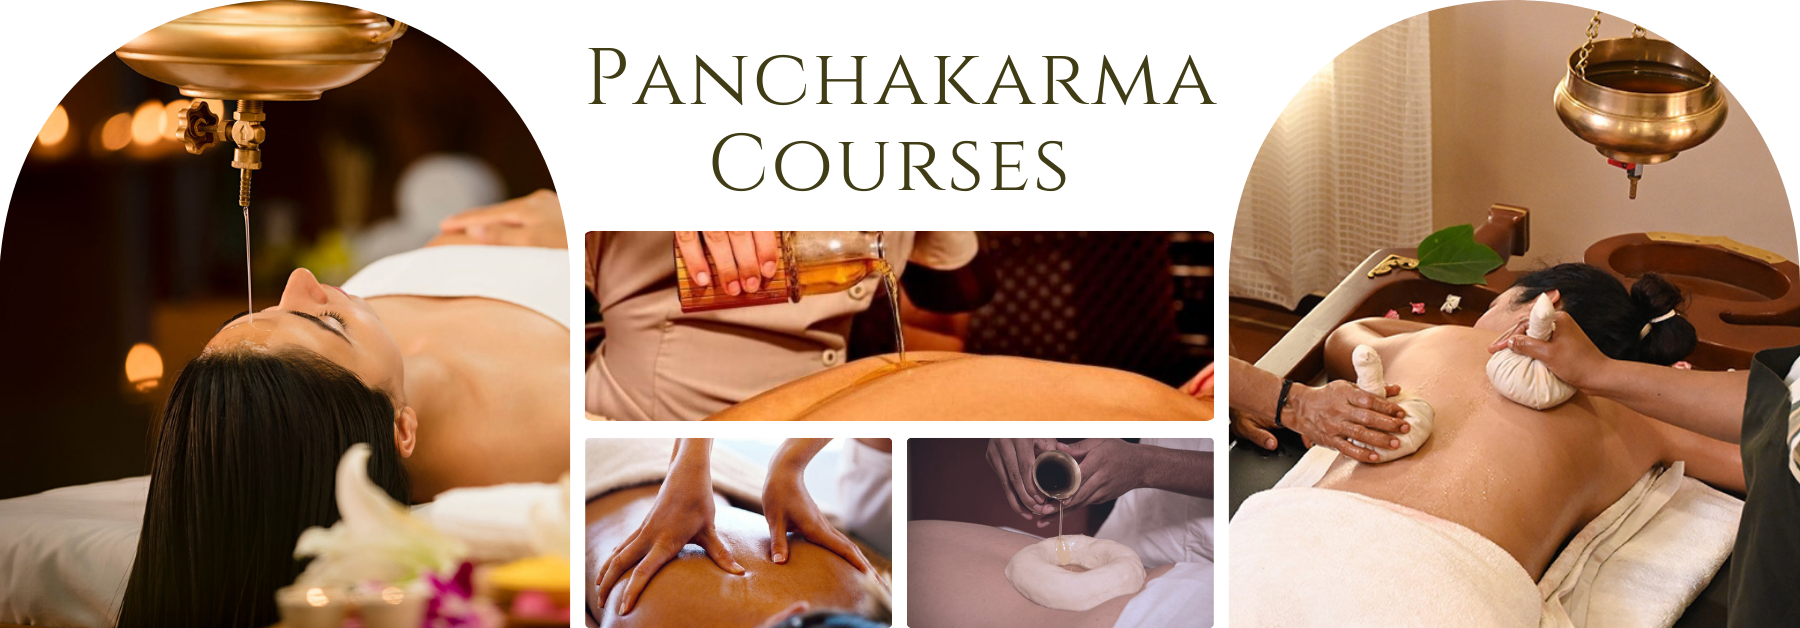 Panchakarma Courses